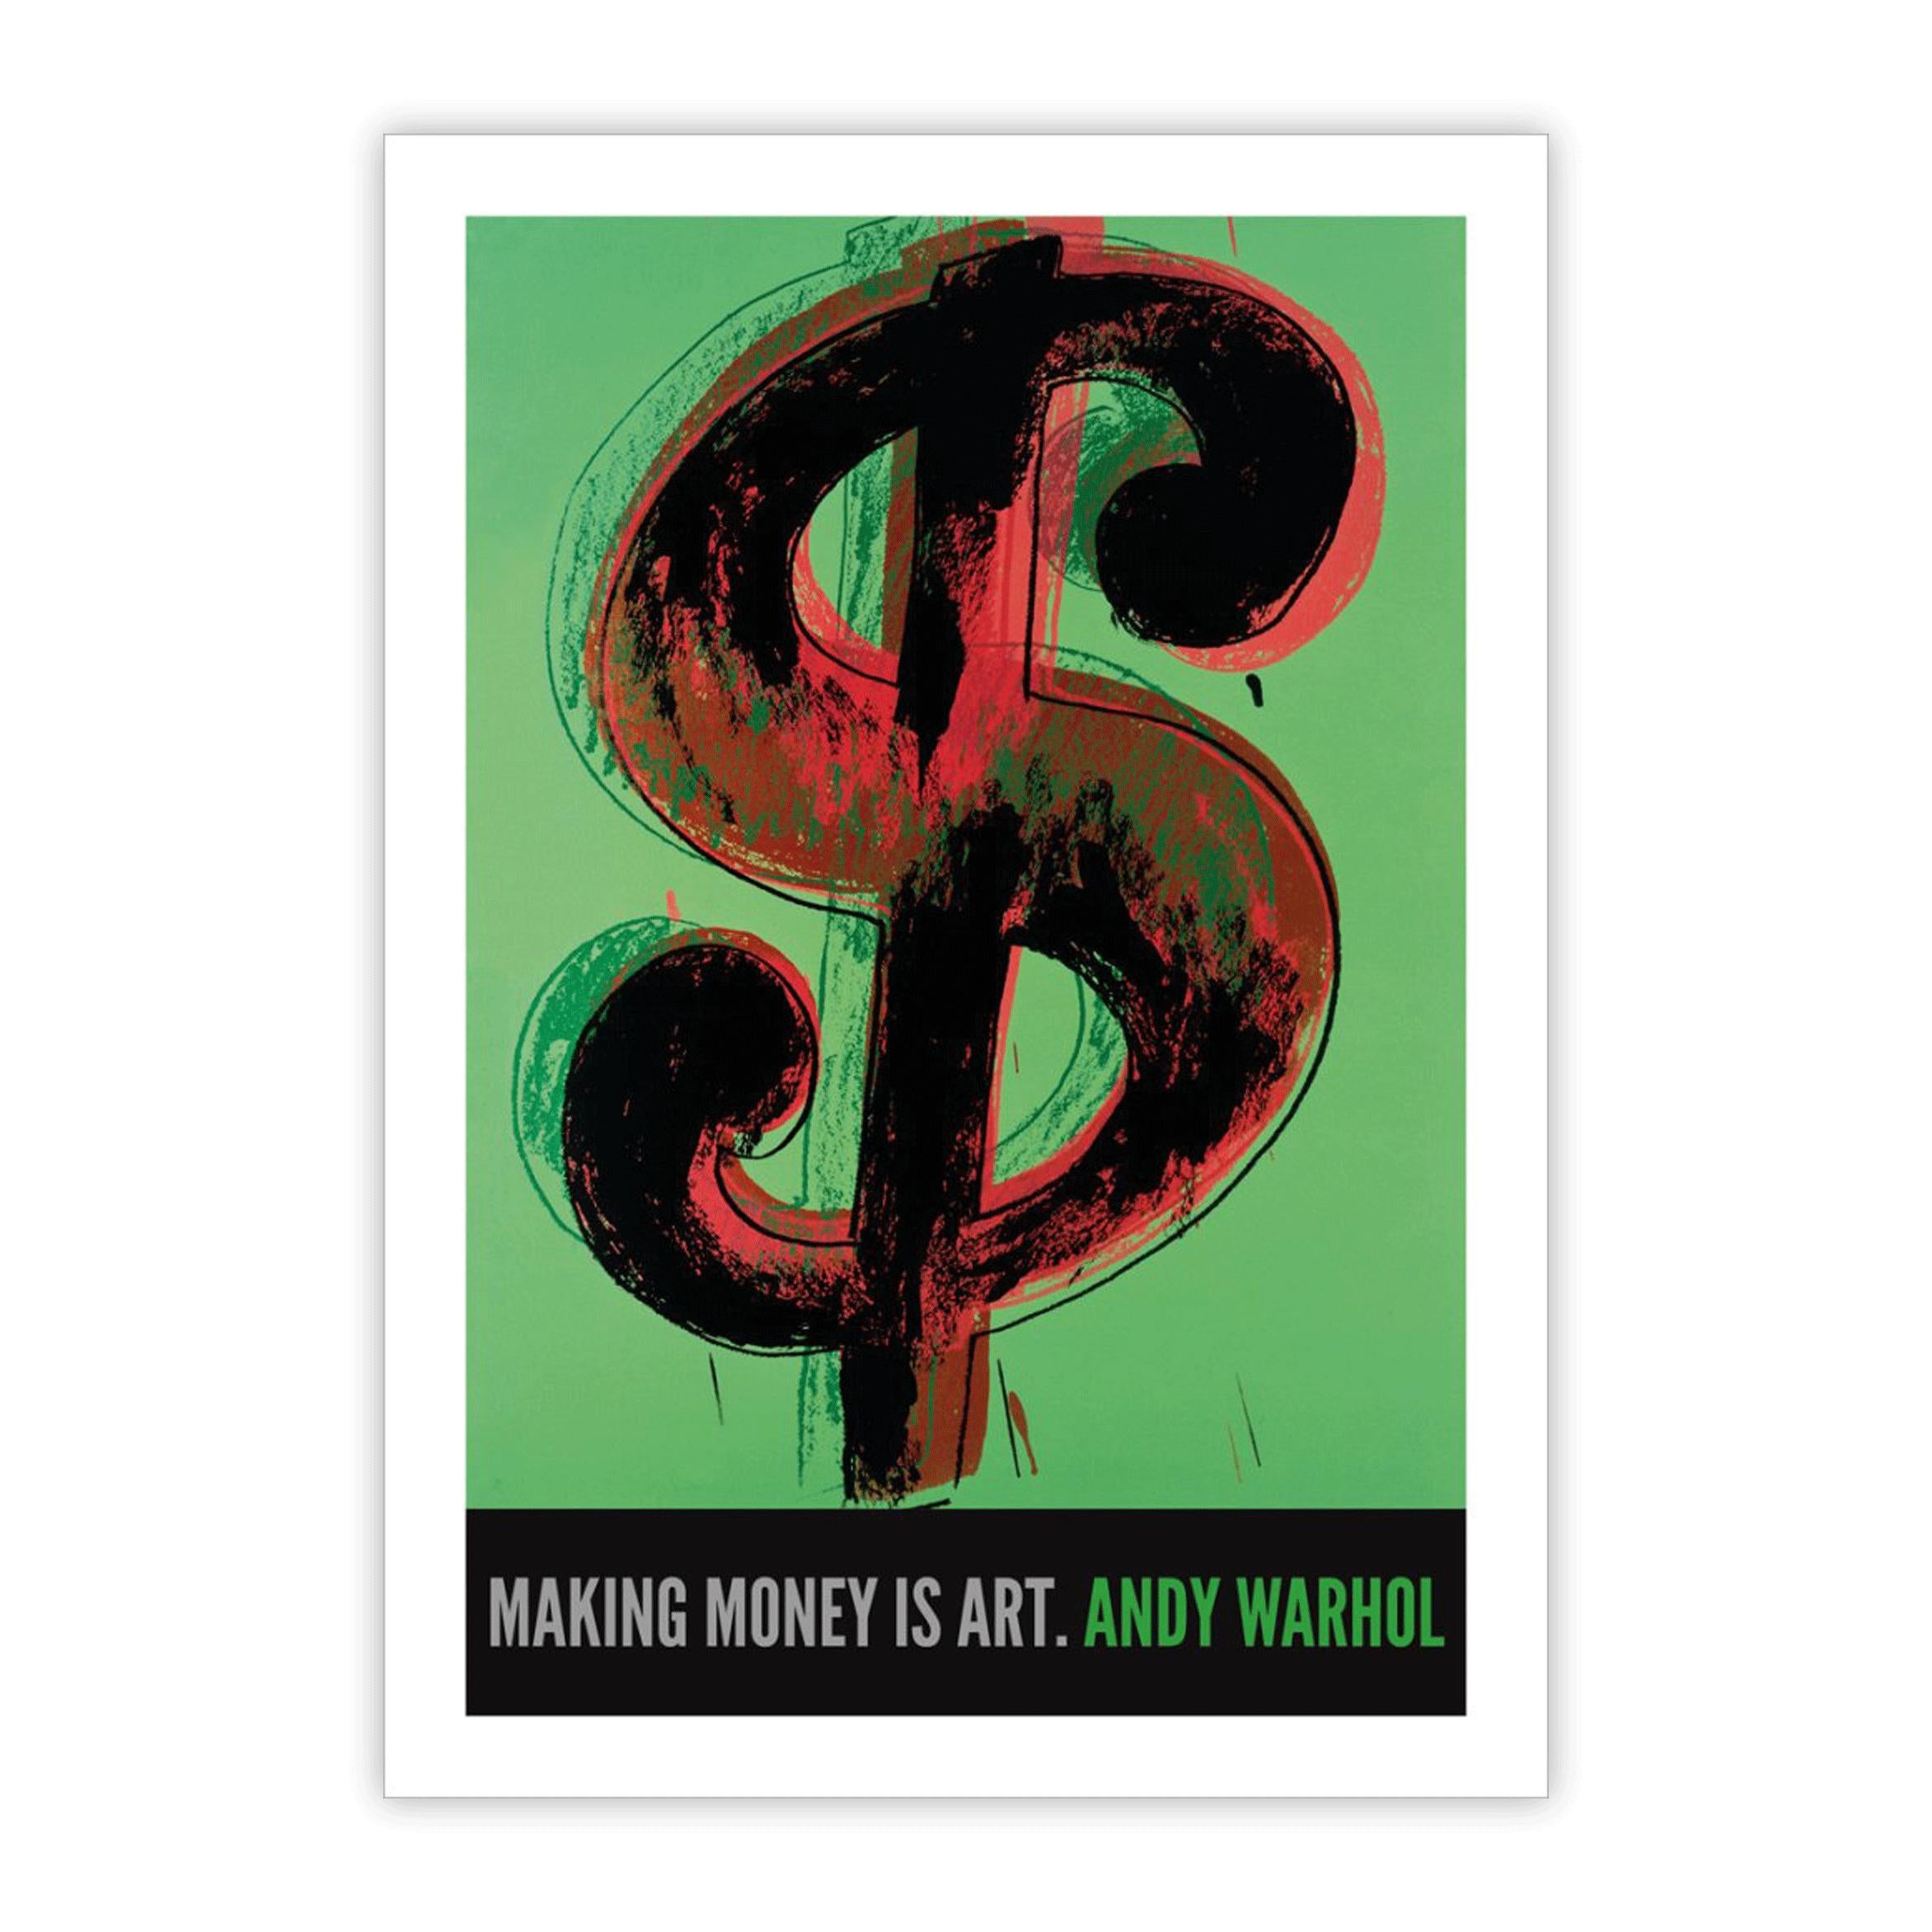 Andys ikonisches 1-Dollar-Poster, wunderschön reproduziert als Giclée-Druck auf schwerem Aquarellpapier mit seinen Worten "Geldverdienen ist Kunst". Dieses großformatige Poster macht sich in jeder Einrichtung gut. 

Papierformat 100 x 70 cm